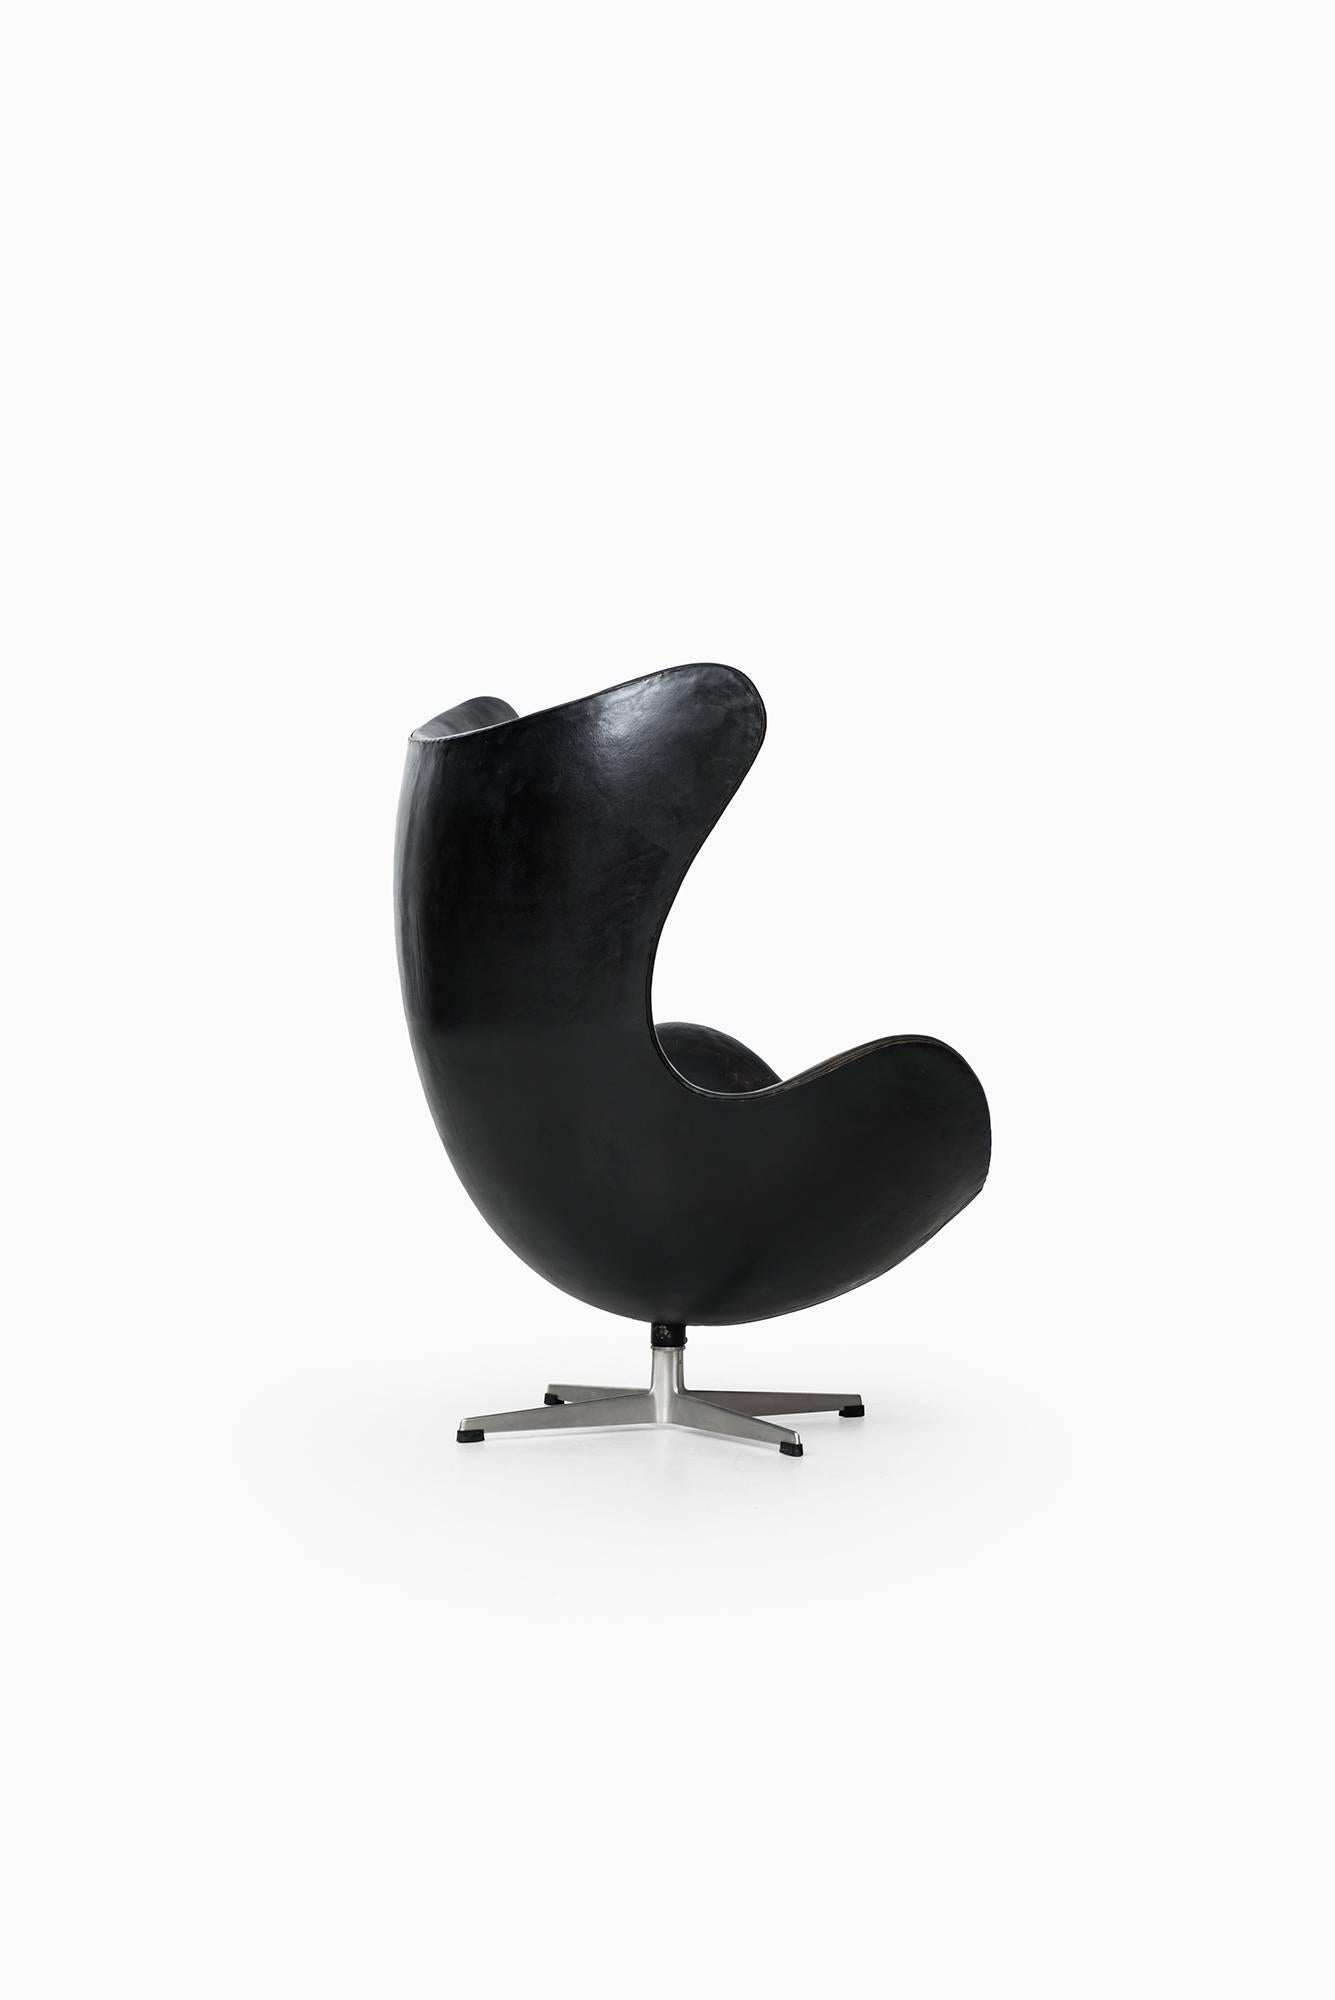 Scandinavian Modern Arne Jacobsen Egg Chair Model 3316 by Fritz Hansen in Denmark